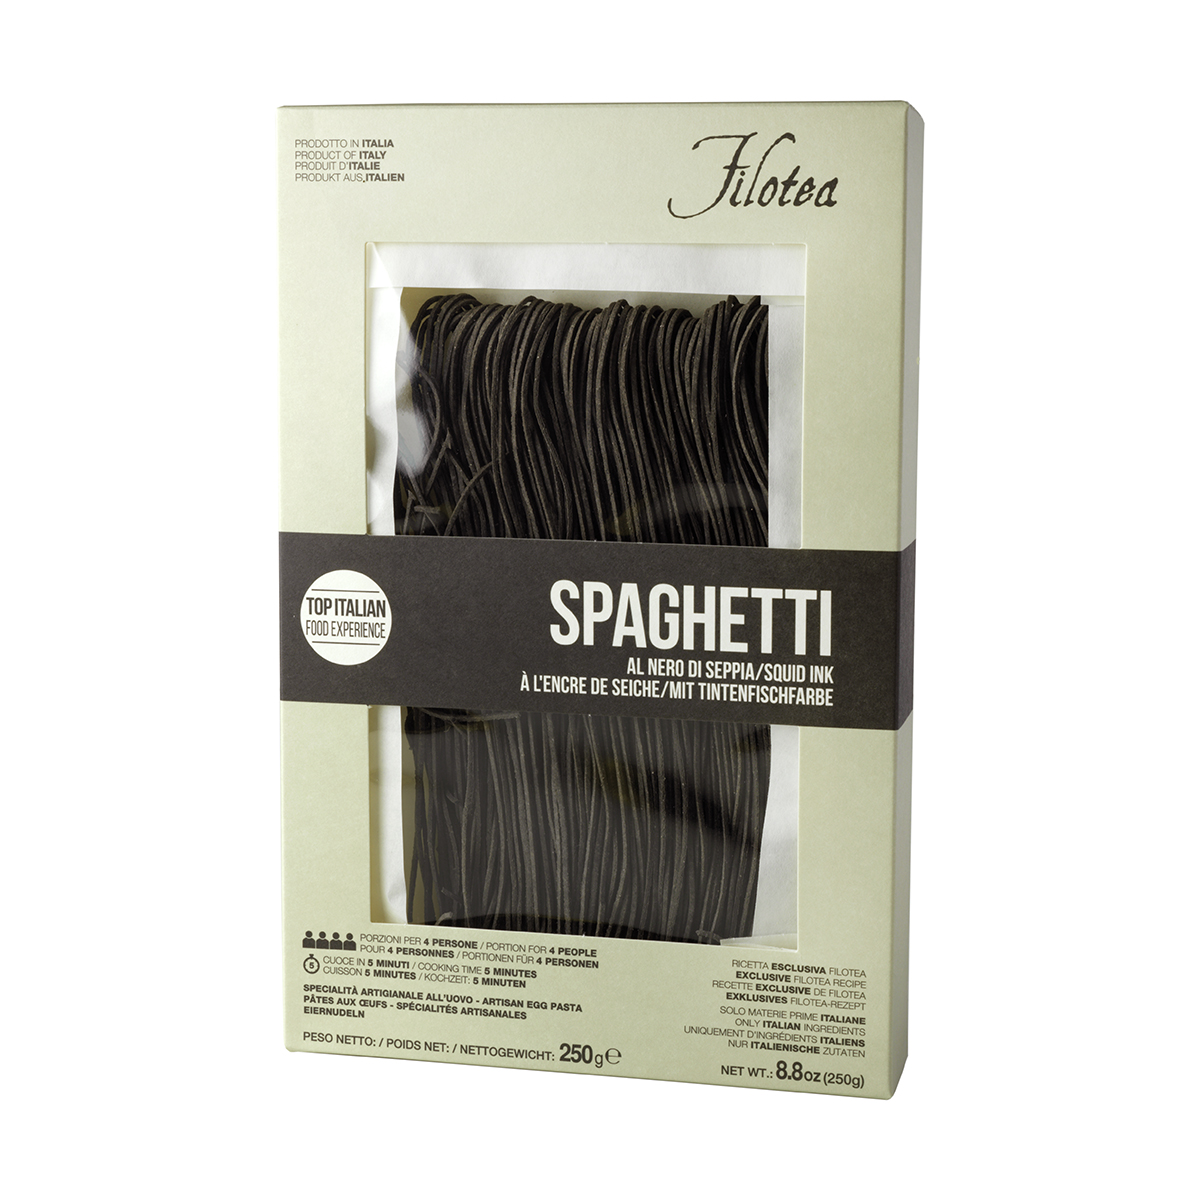 Spaghetti chitarra encre de seiche